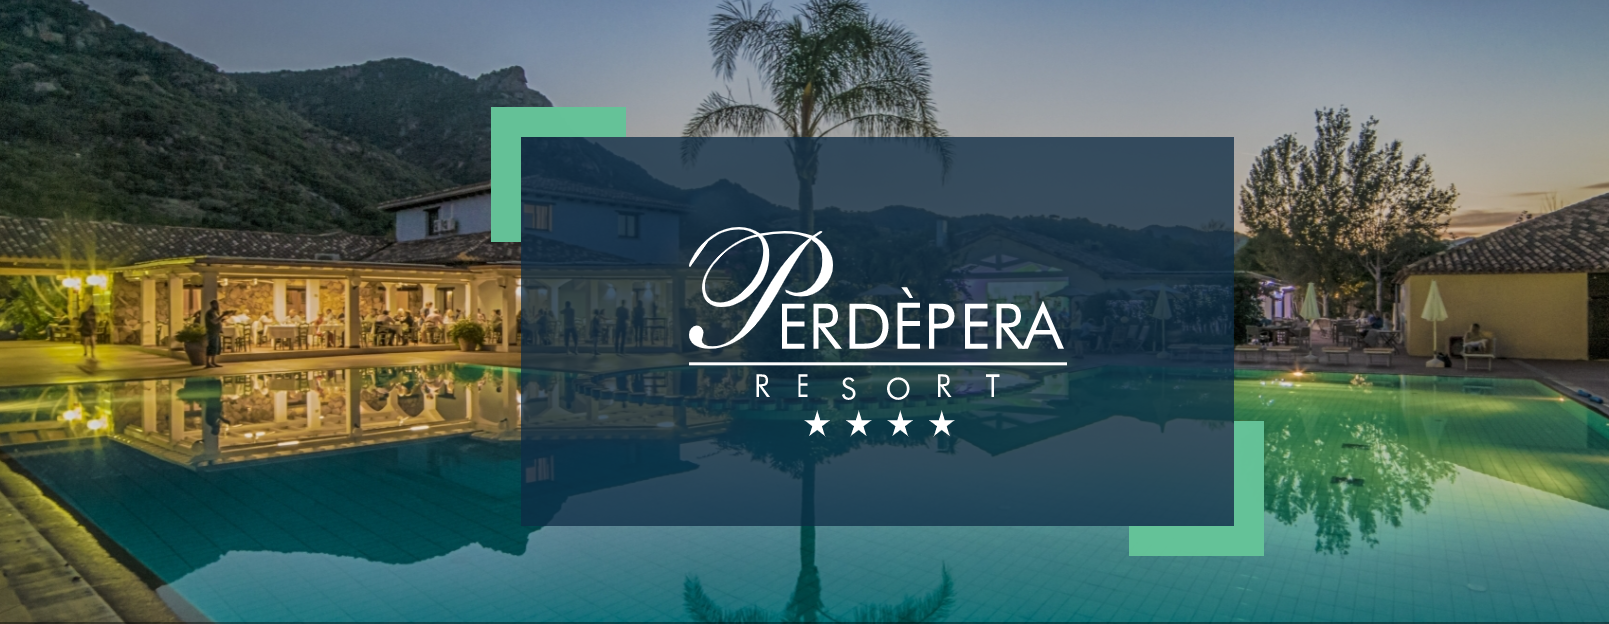 Resort Perdepera - Helen Doron Sardegna